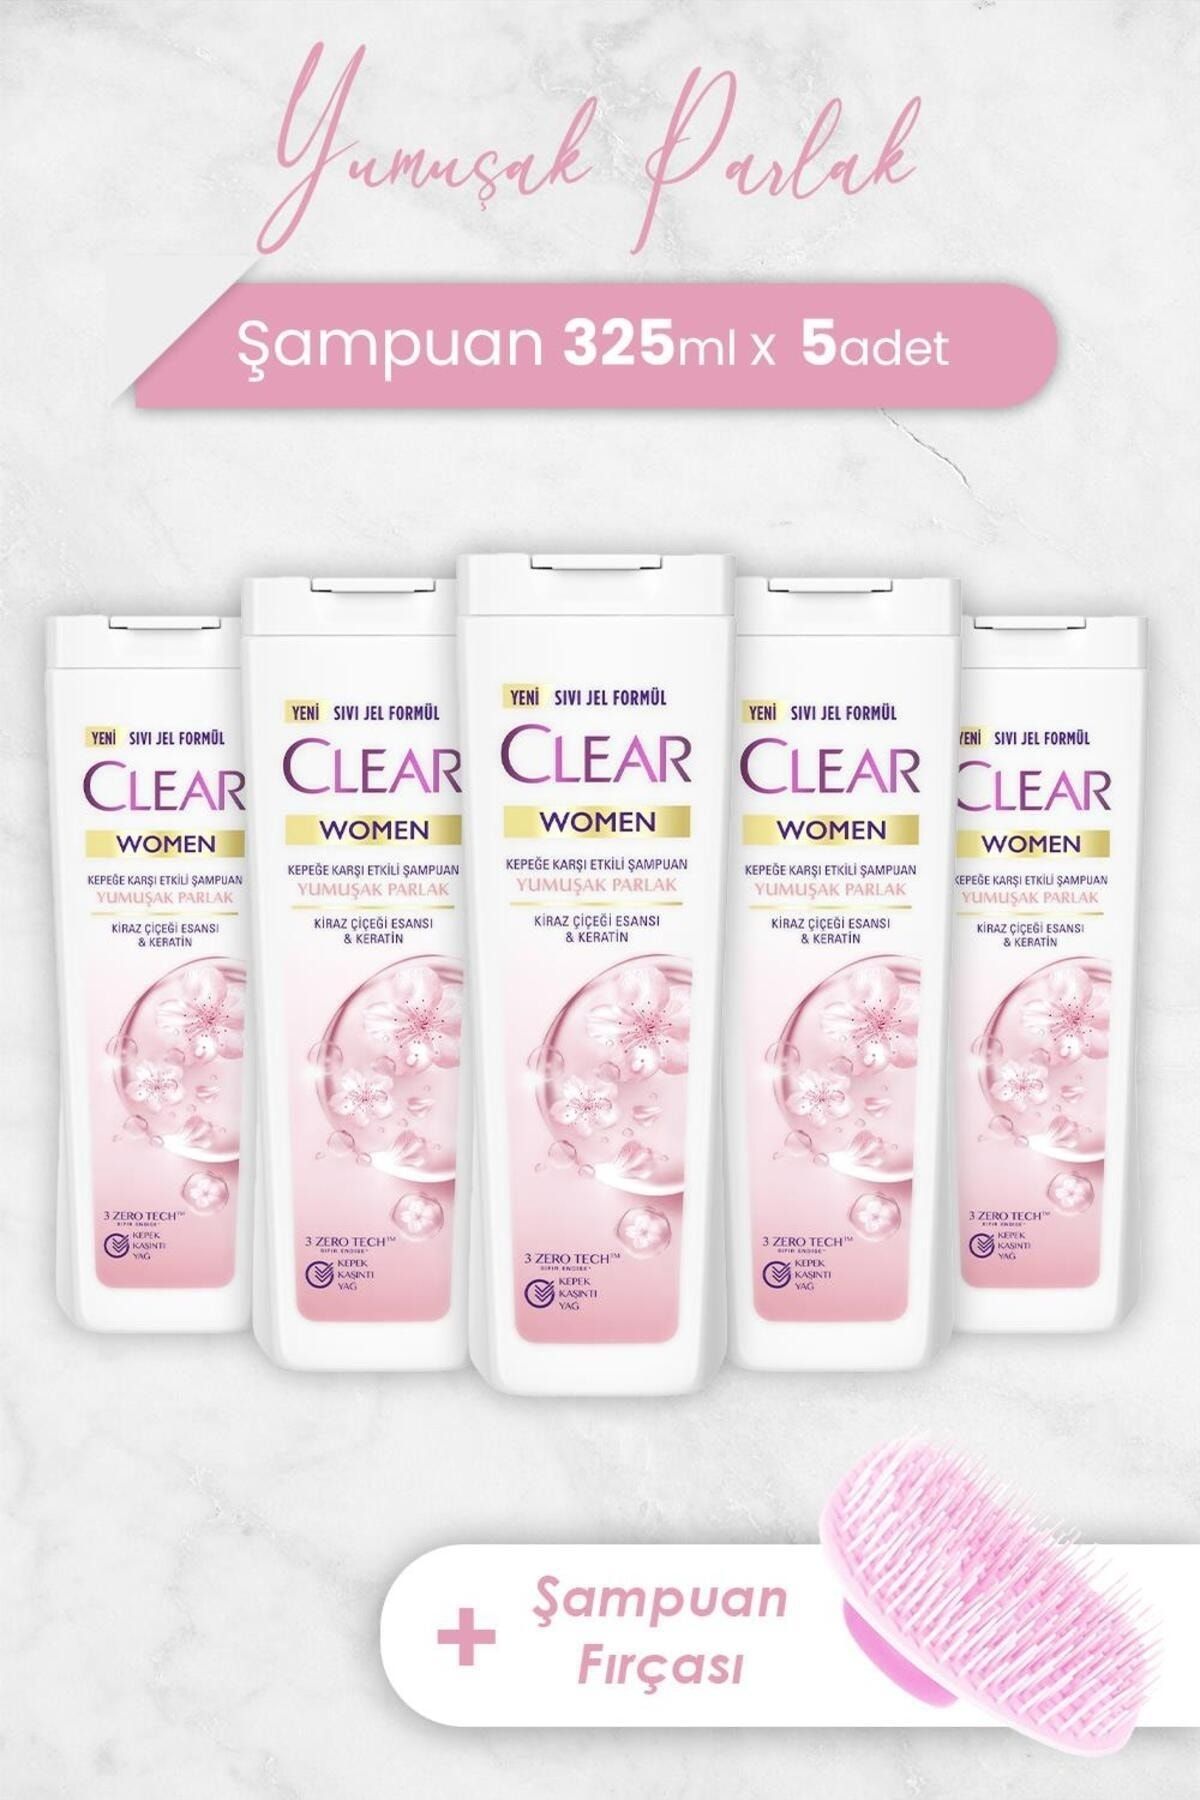 Clear Women Yumuşak Parlak Şampuan 325 ml x 5 Adet ve Şampuan Fırçası